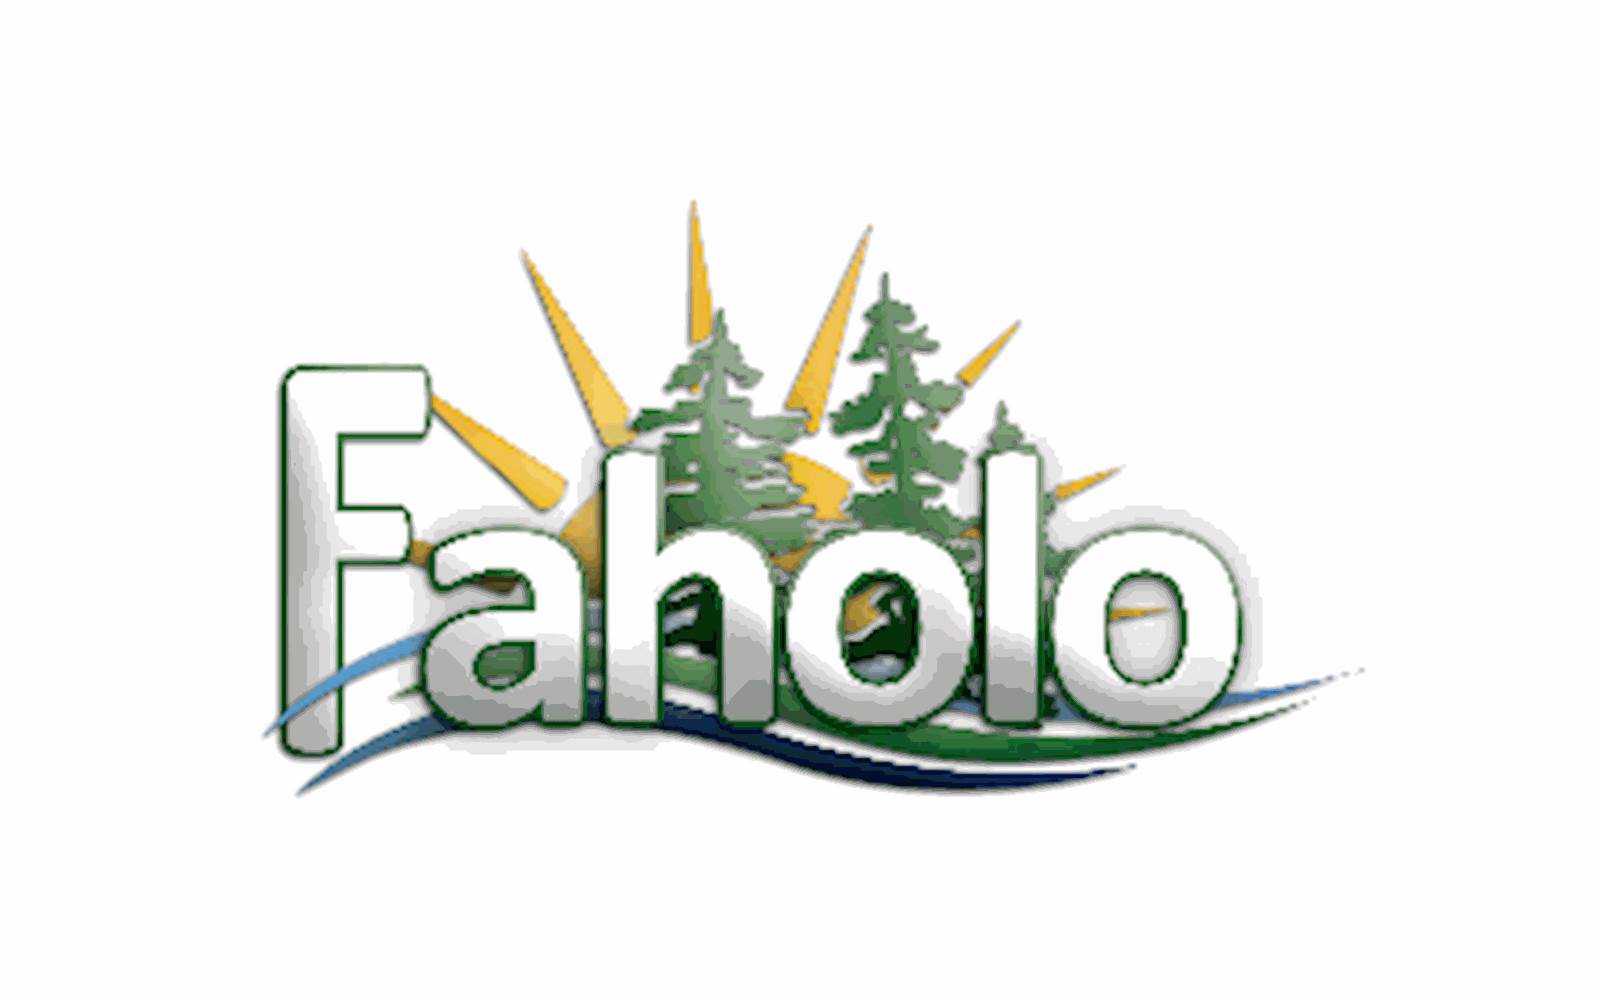 (c) Faholo.org